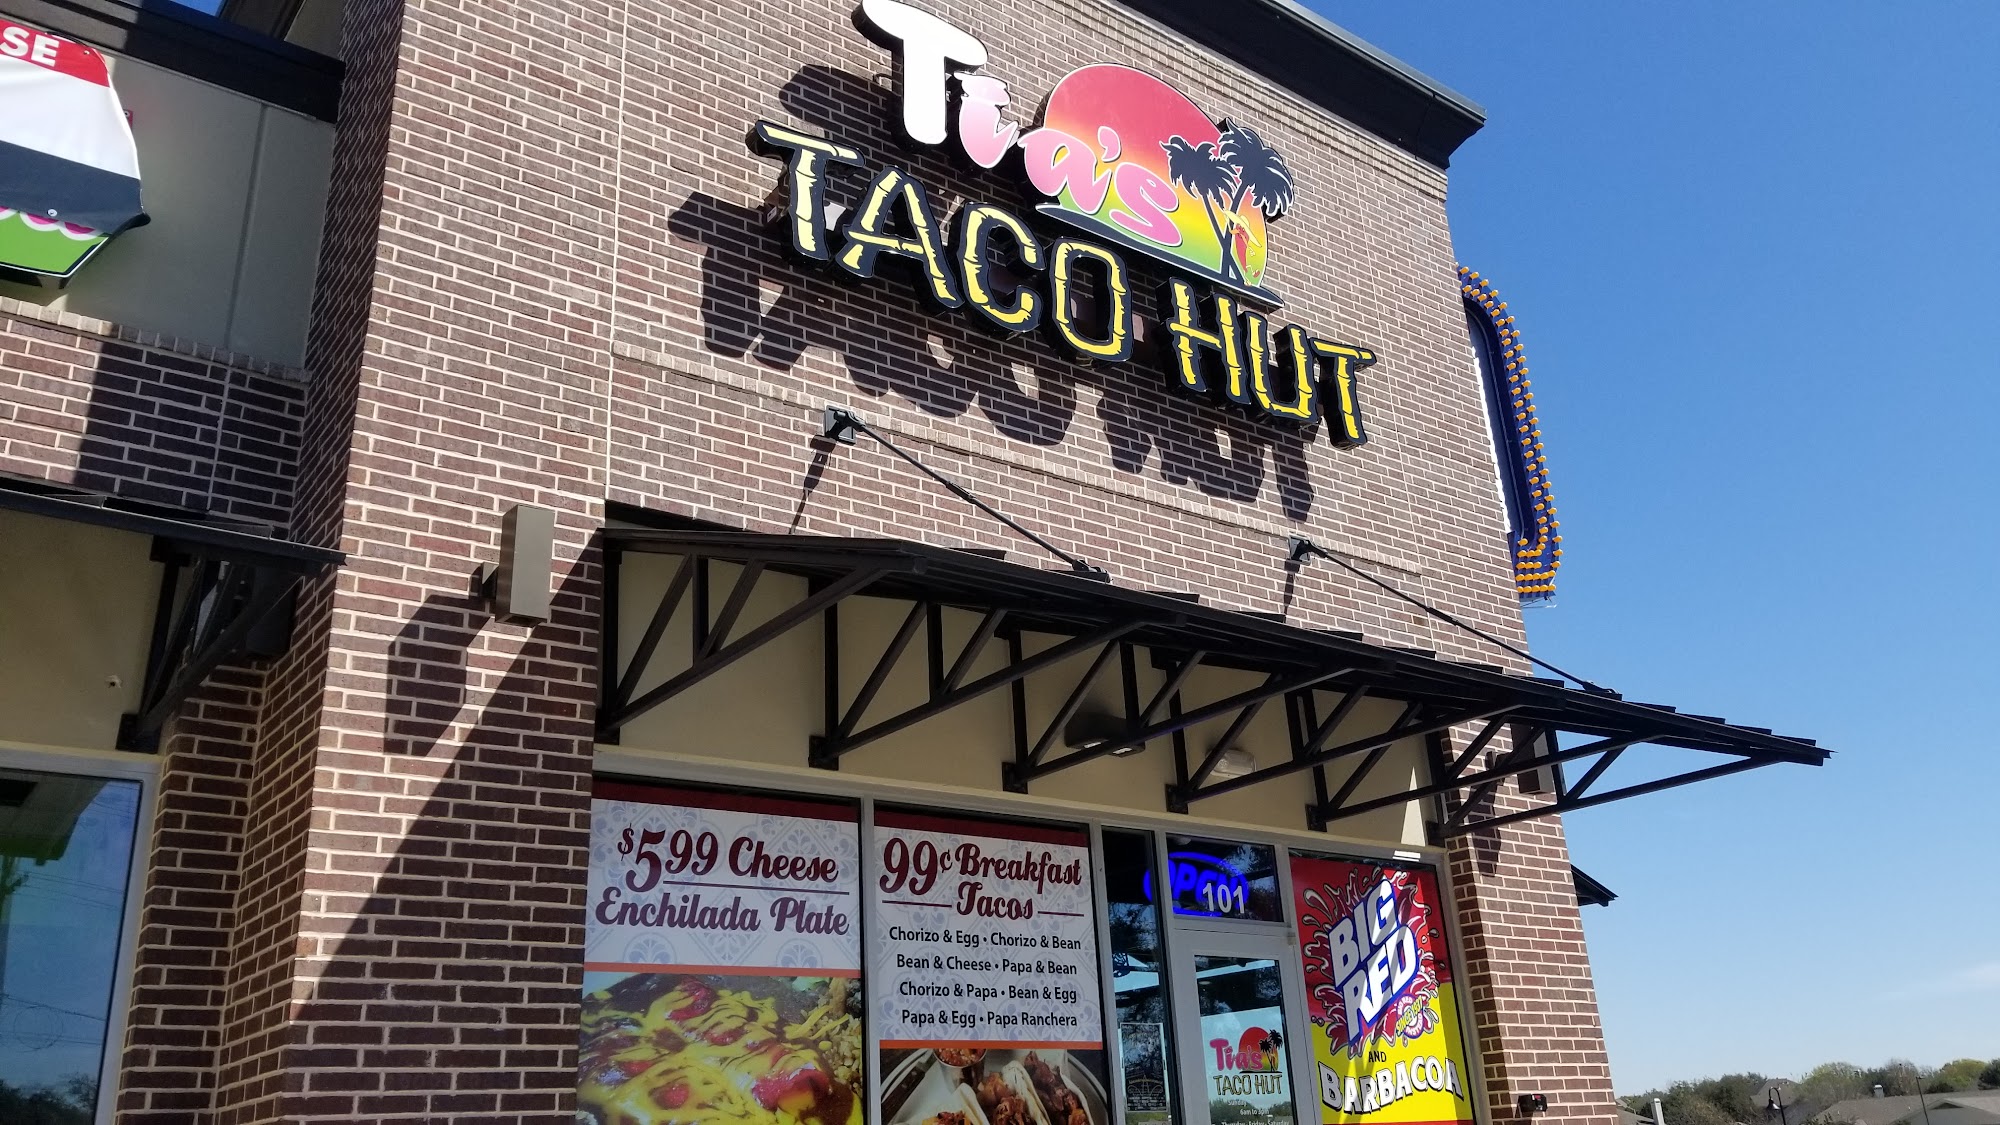 Tia's Taco Hut